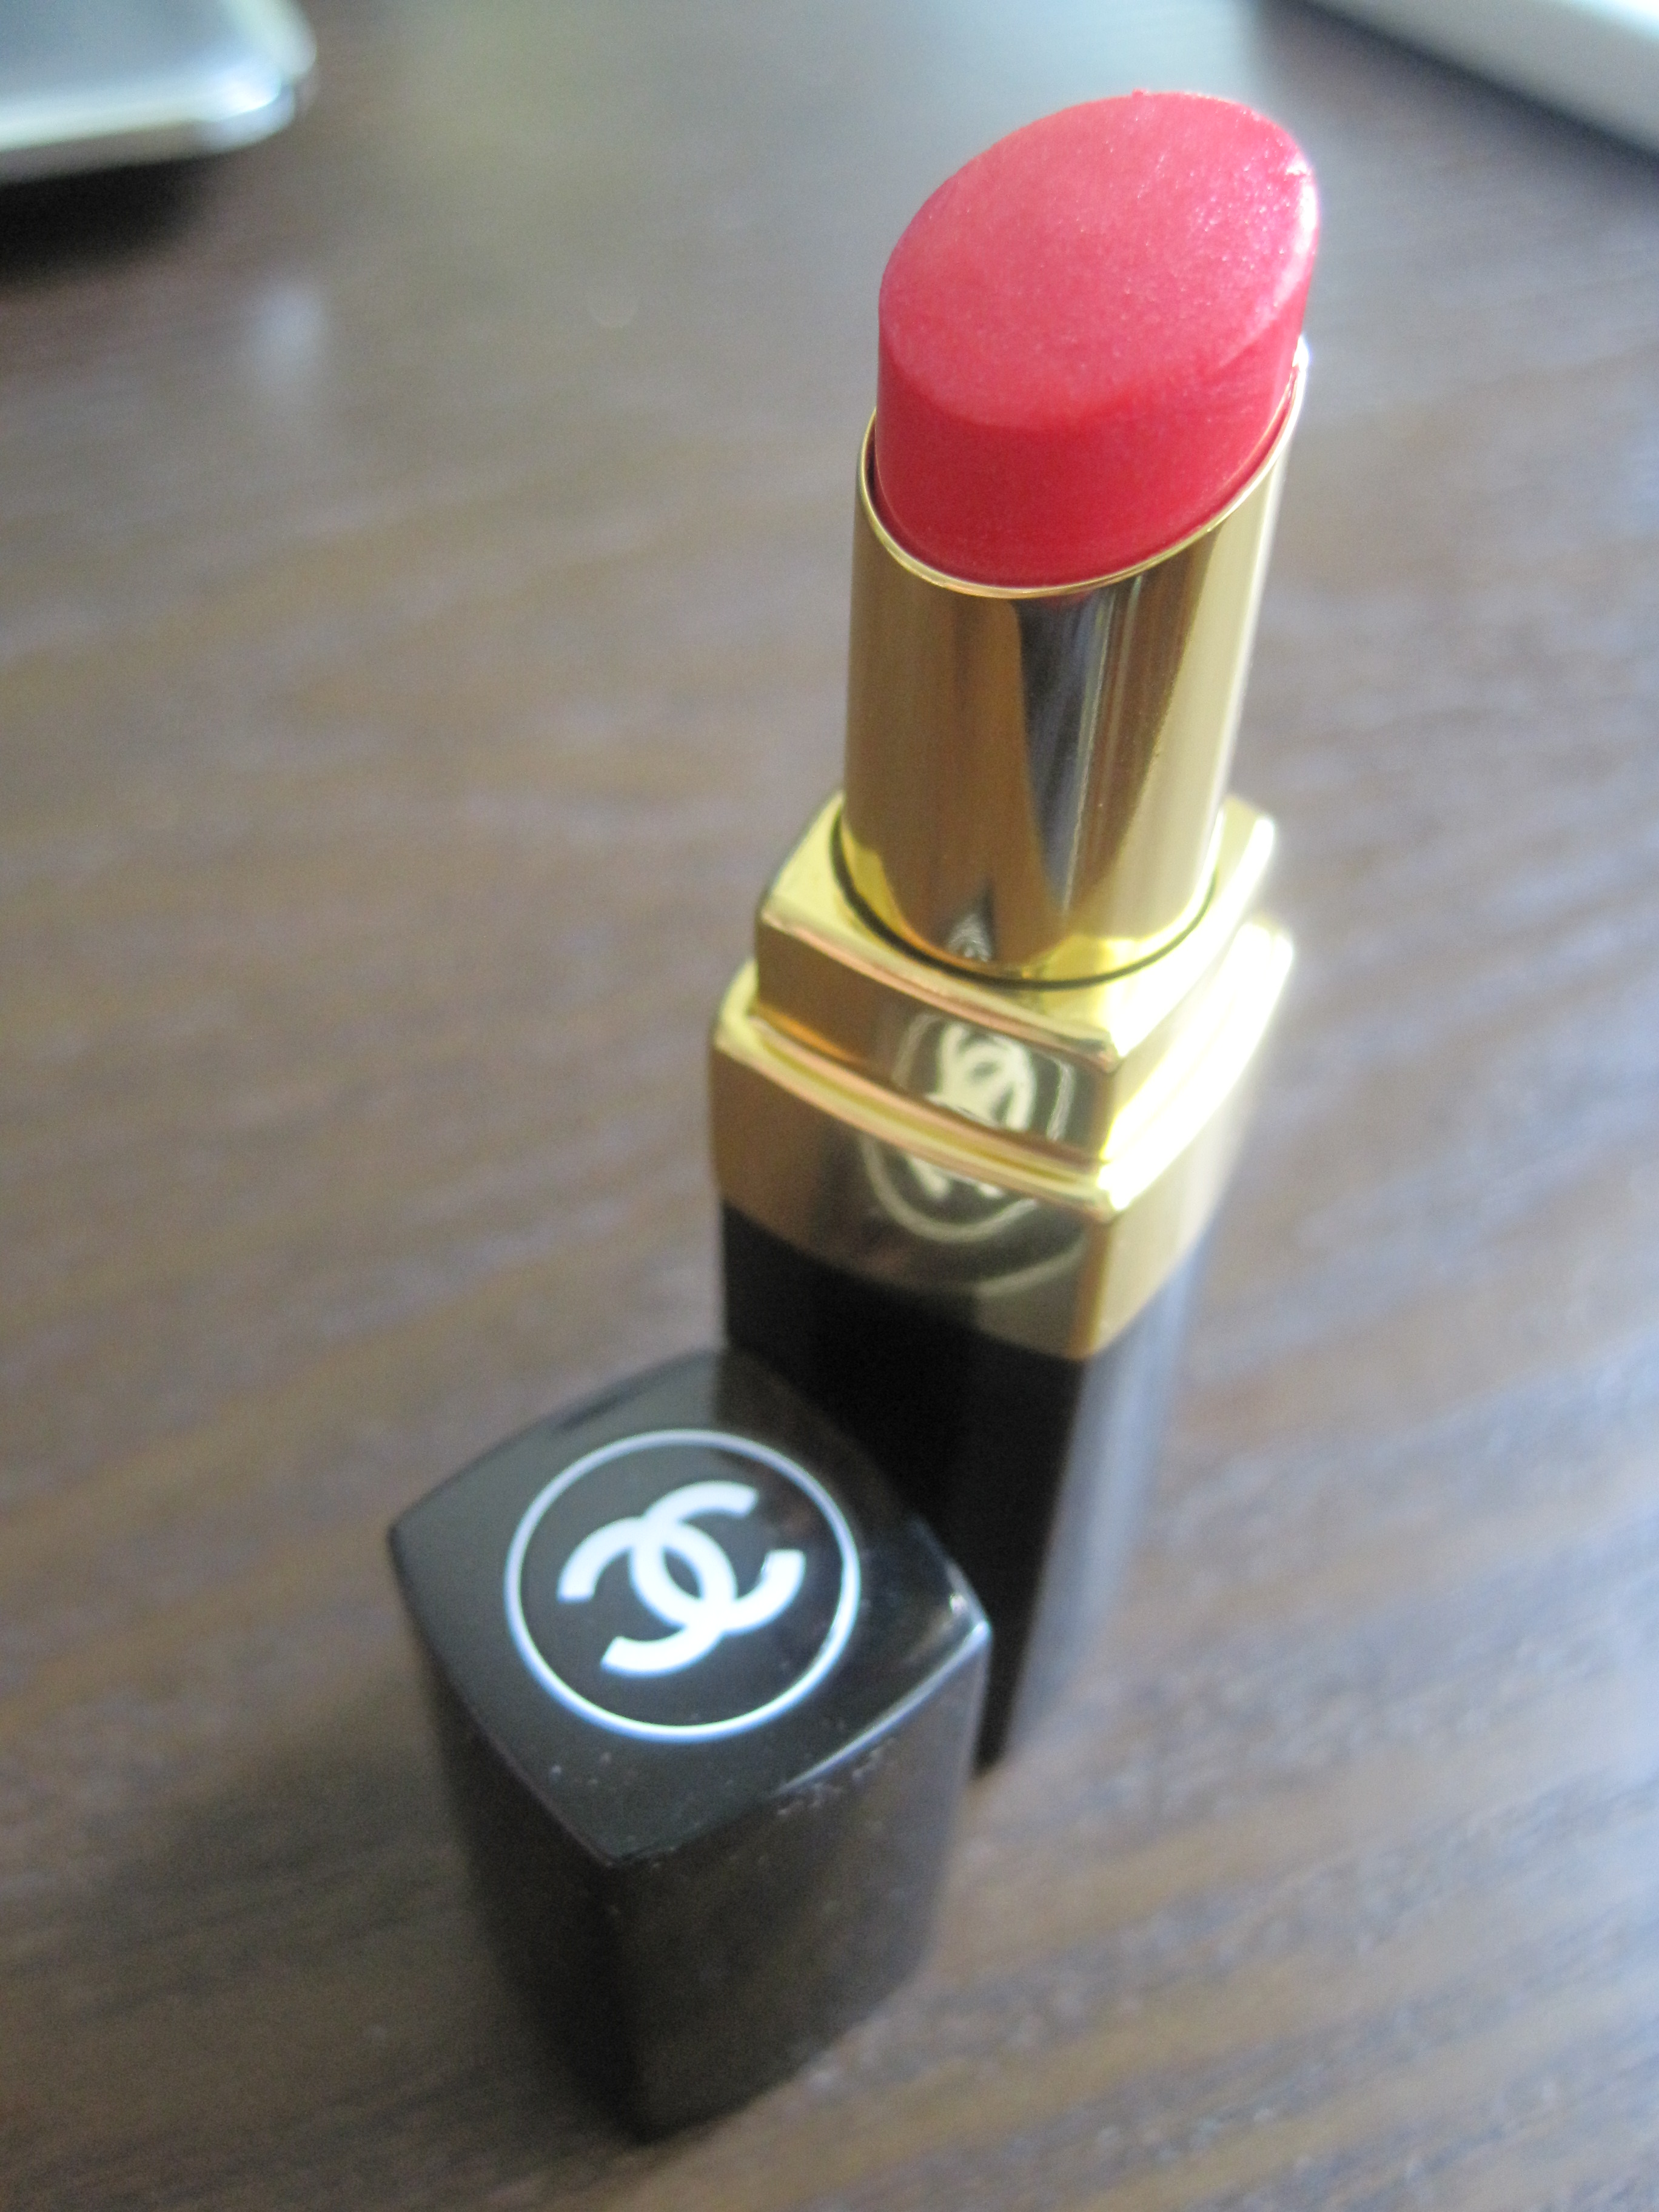 Review: Chanel Rouge Coco Shine Lipstick in 62 Monte Carlo